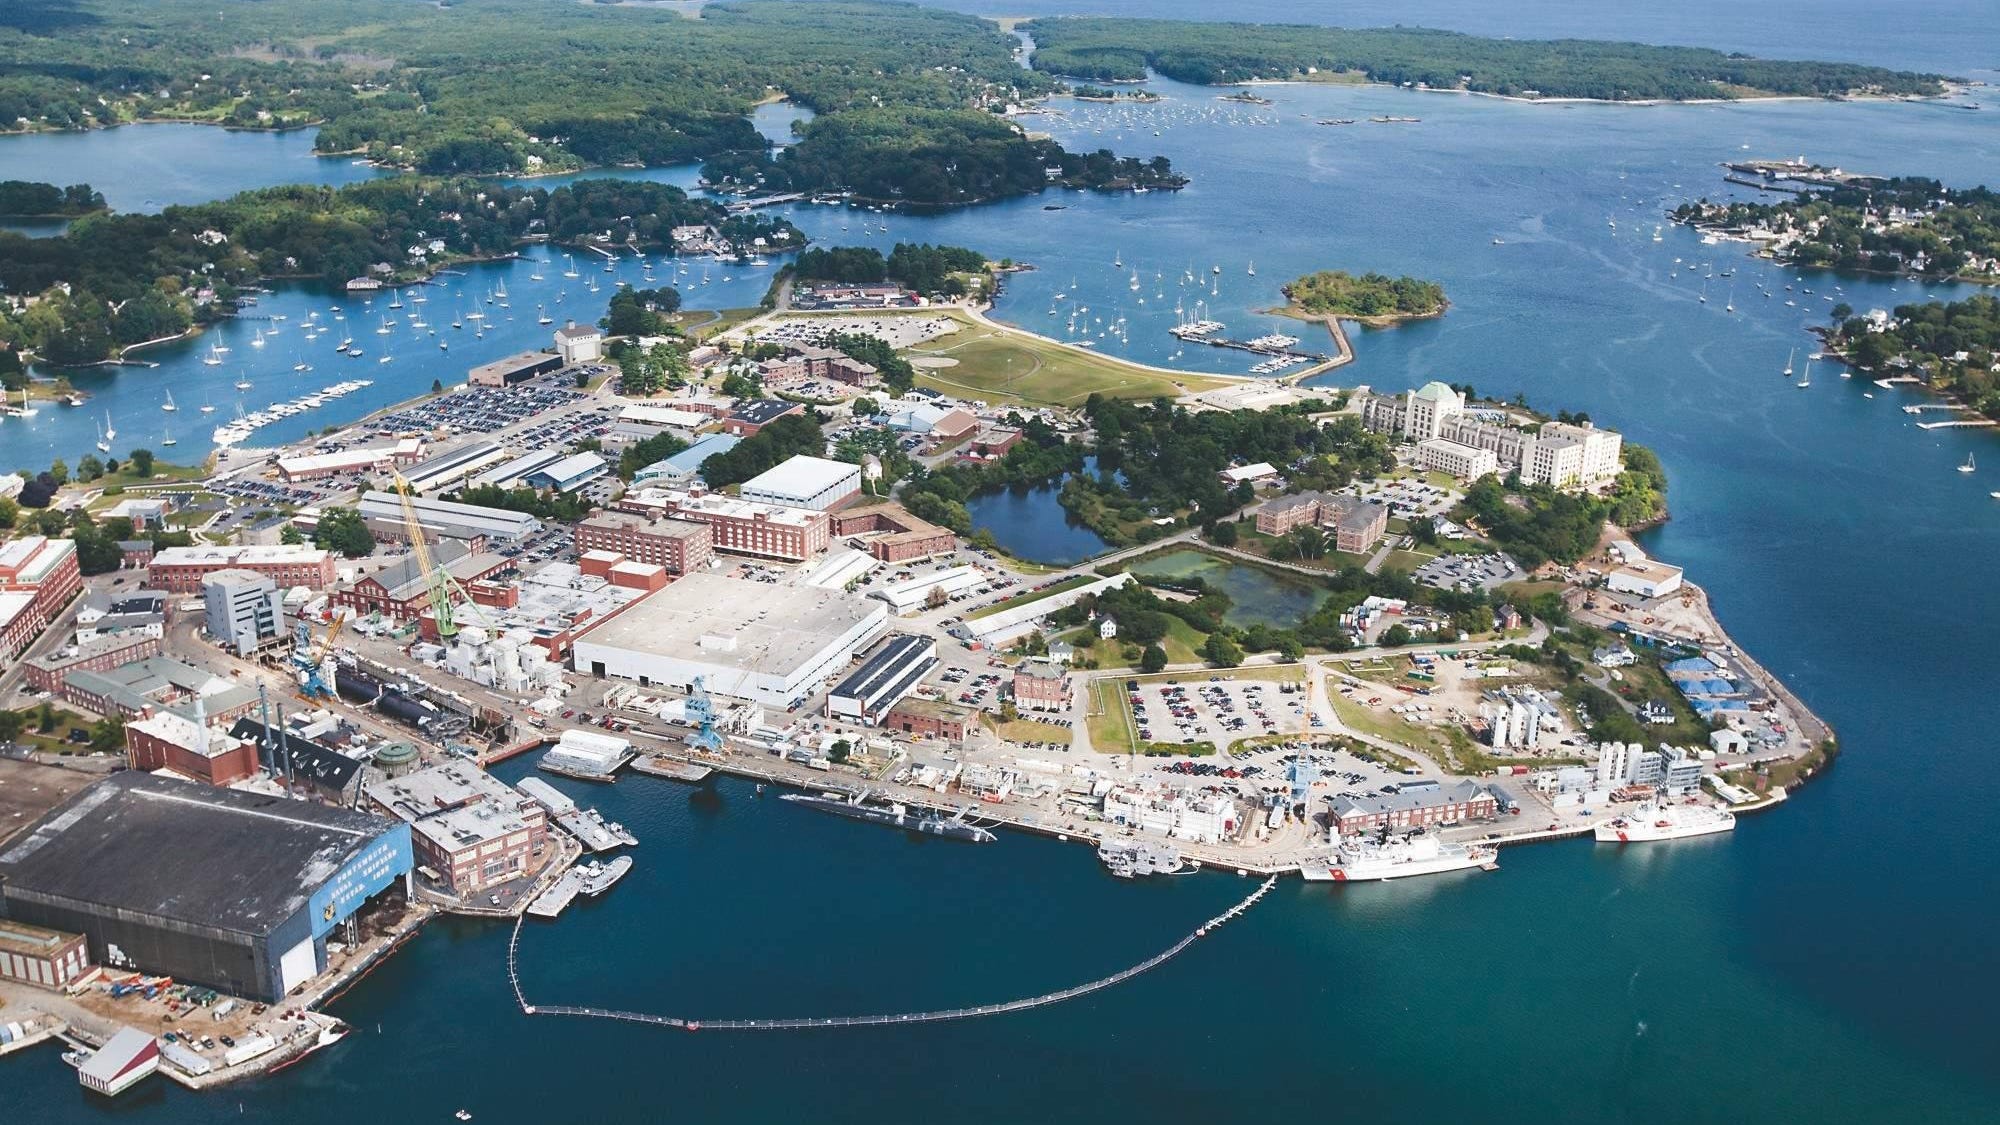 1.7 billion contract to modernize Portsmouth Naval Shipyard